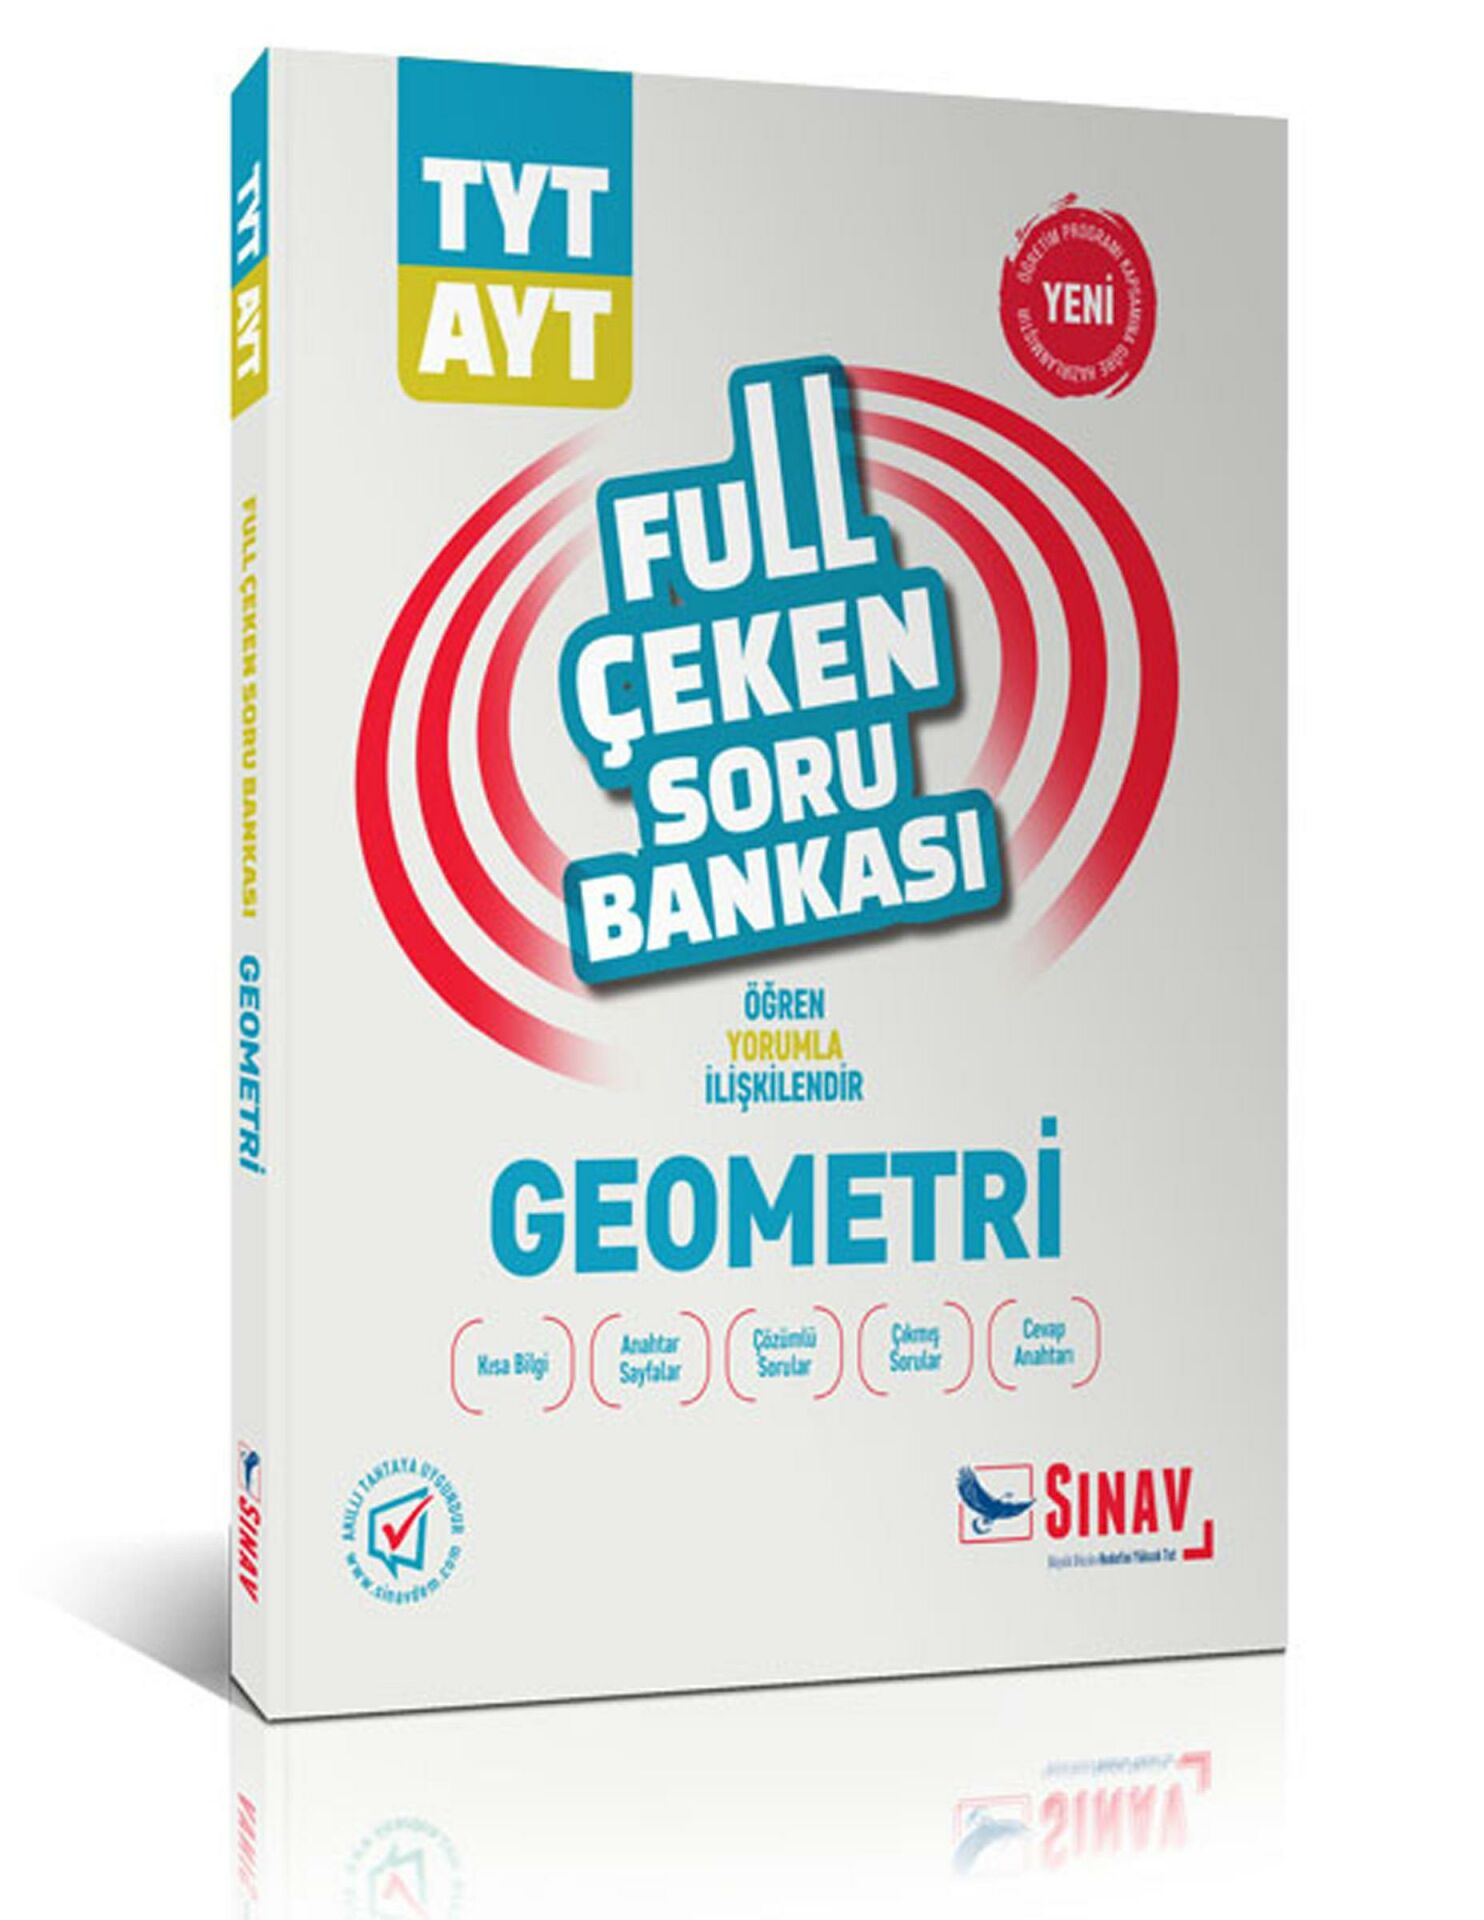 Sınav TYT AYT Geometri Full Çeken Soru Bankası